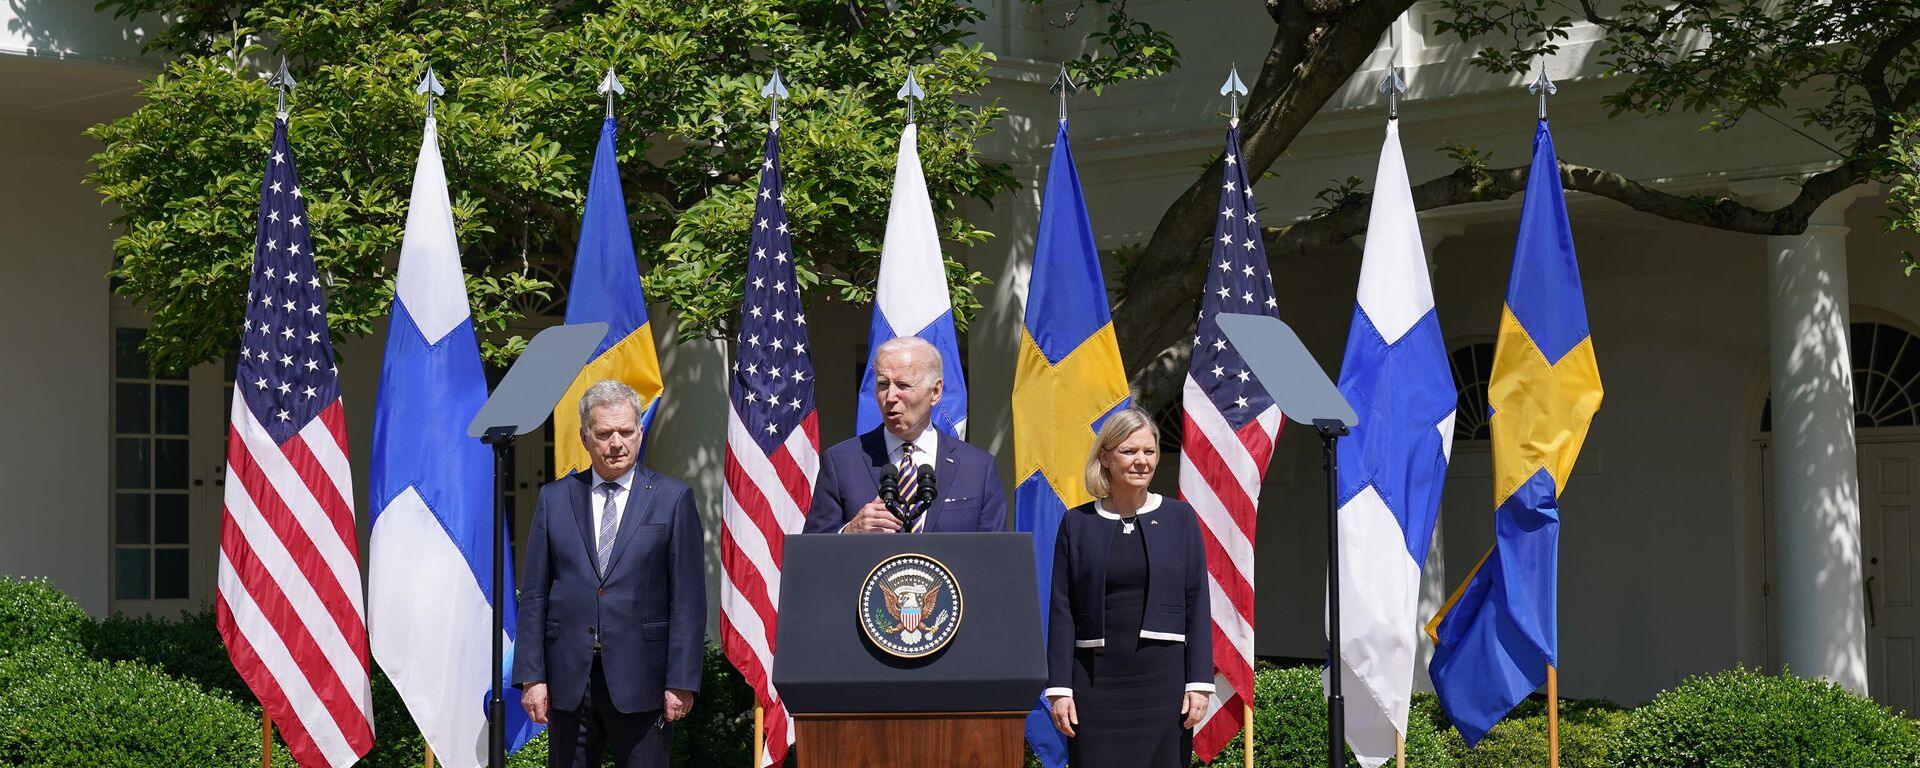 Sauli Niinisto, presidente da Finlândia (à esquerda), Joe Biden, presidente dos EUA (no centro), Magdalena Andersson, primeira-ministra da Suécia (à direita), participam de coletiva de imprensa no Rose Garden da Casa Branca em Washington, EUA, 19 de maio de 2022 - Sputnik Brasil, 1920, 15.06.2022